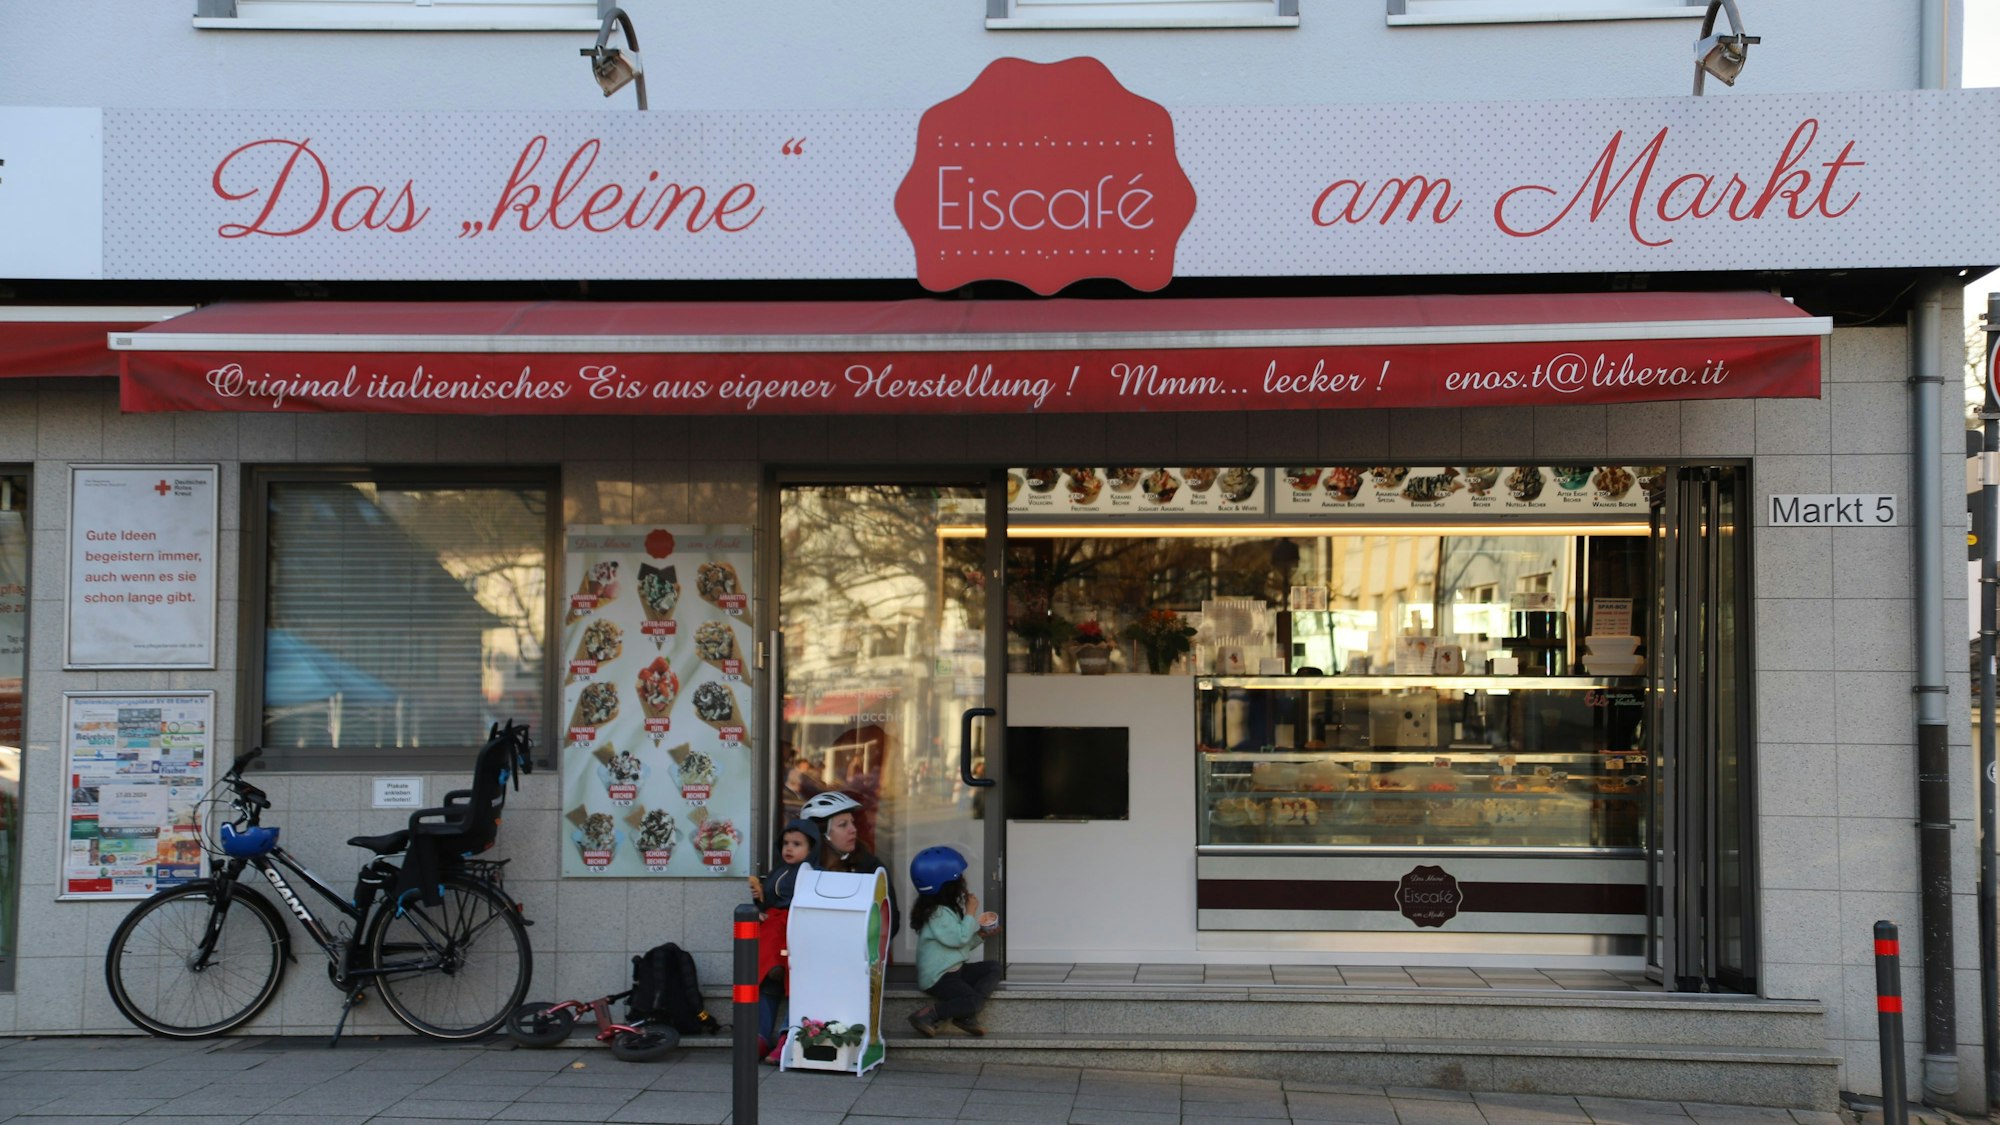 Das kleine Eiscafé am Markt in Eitorf in der Außenansicht. Links im Bild ist ein Fahrrad mit Kindersitz an die Hauswand gelehnt.